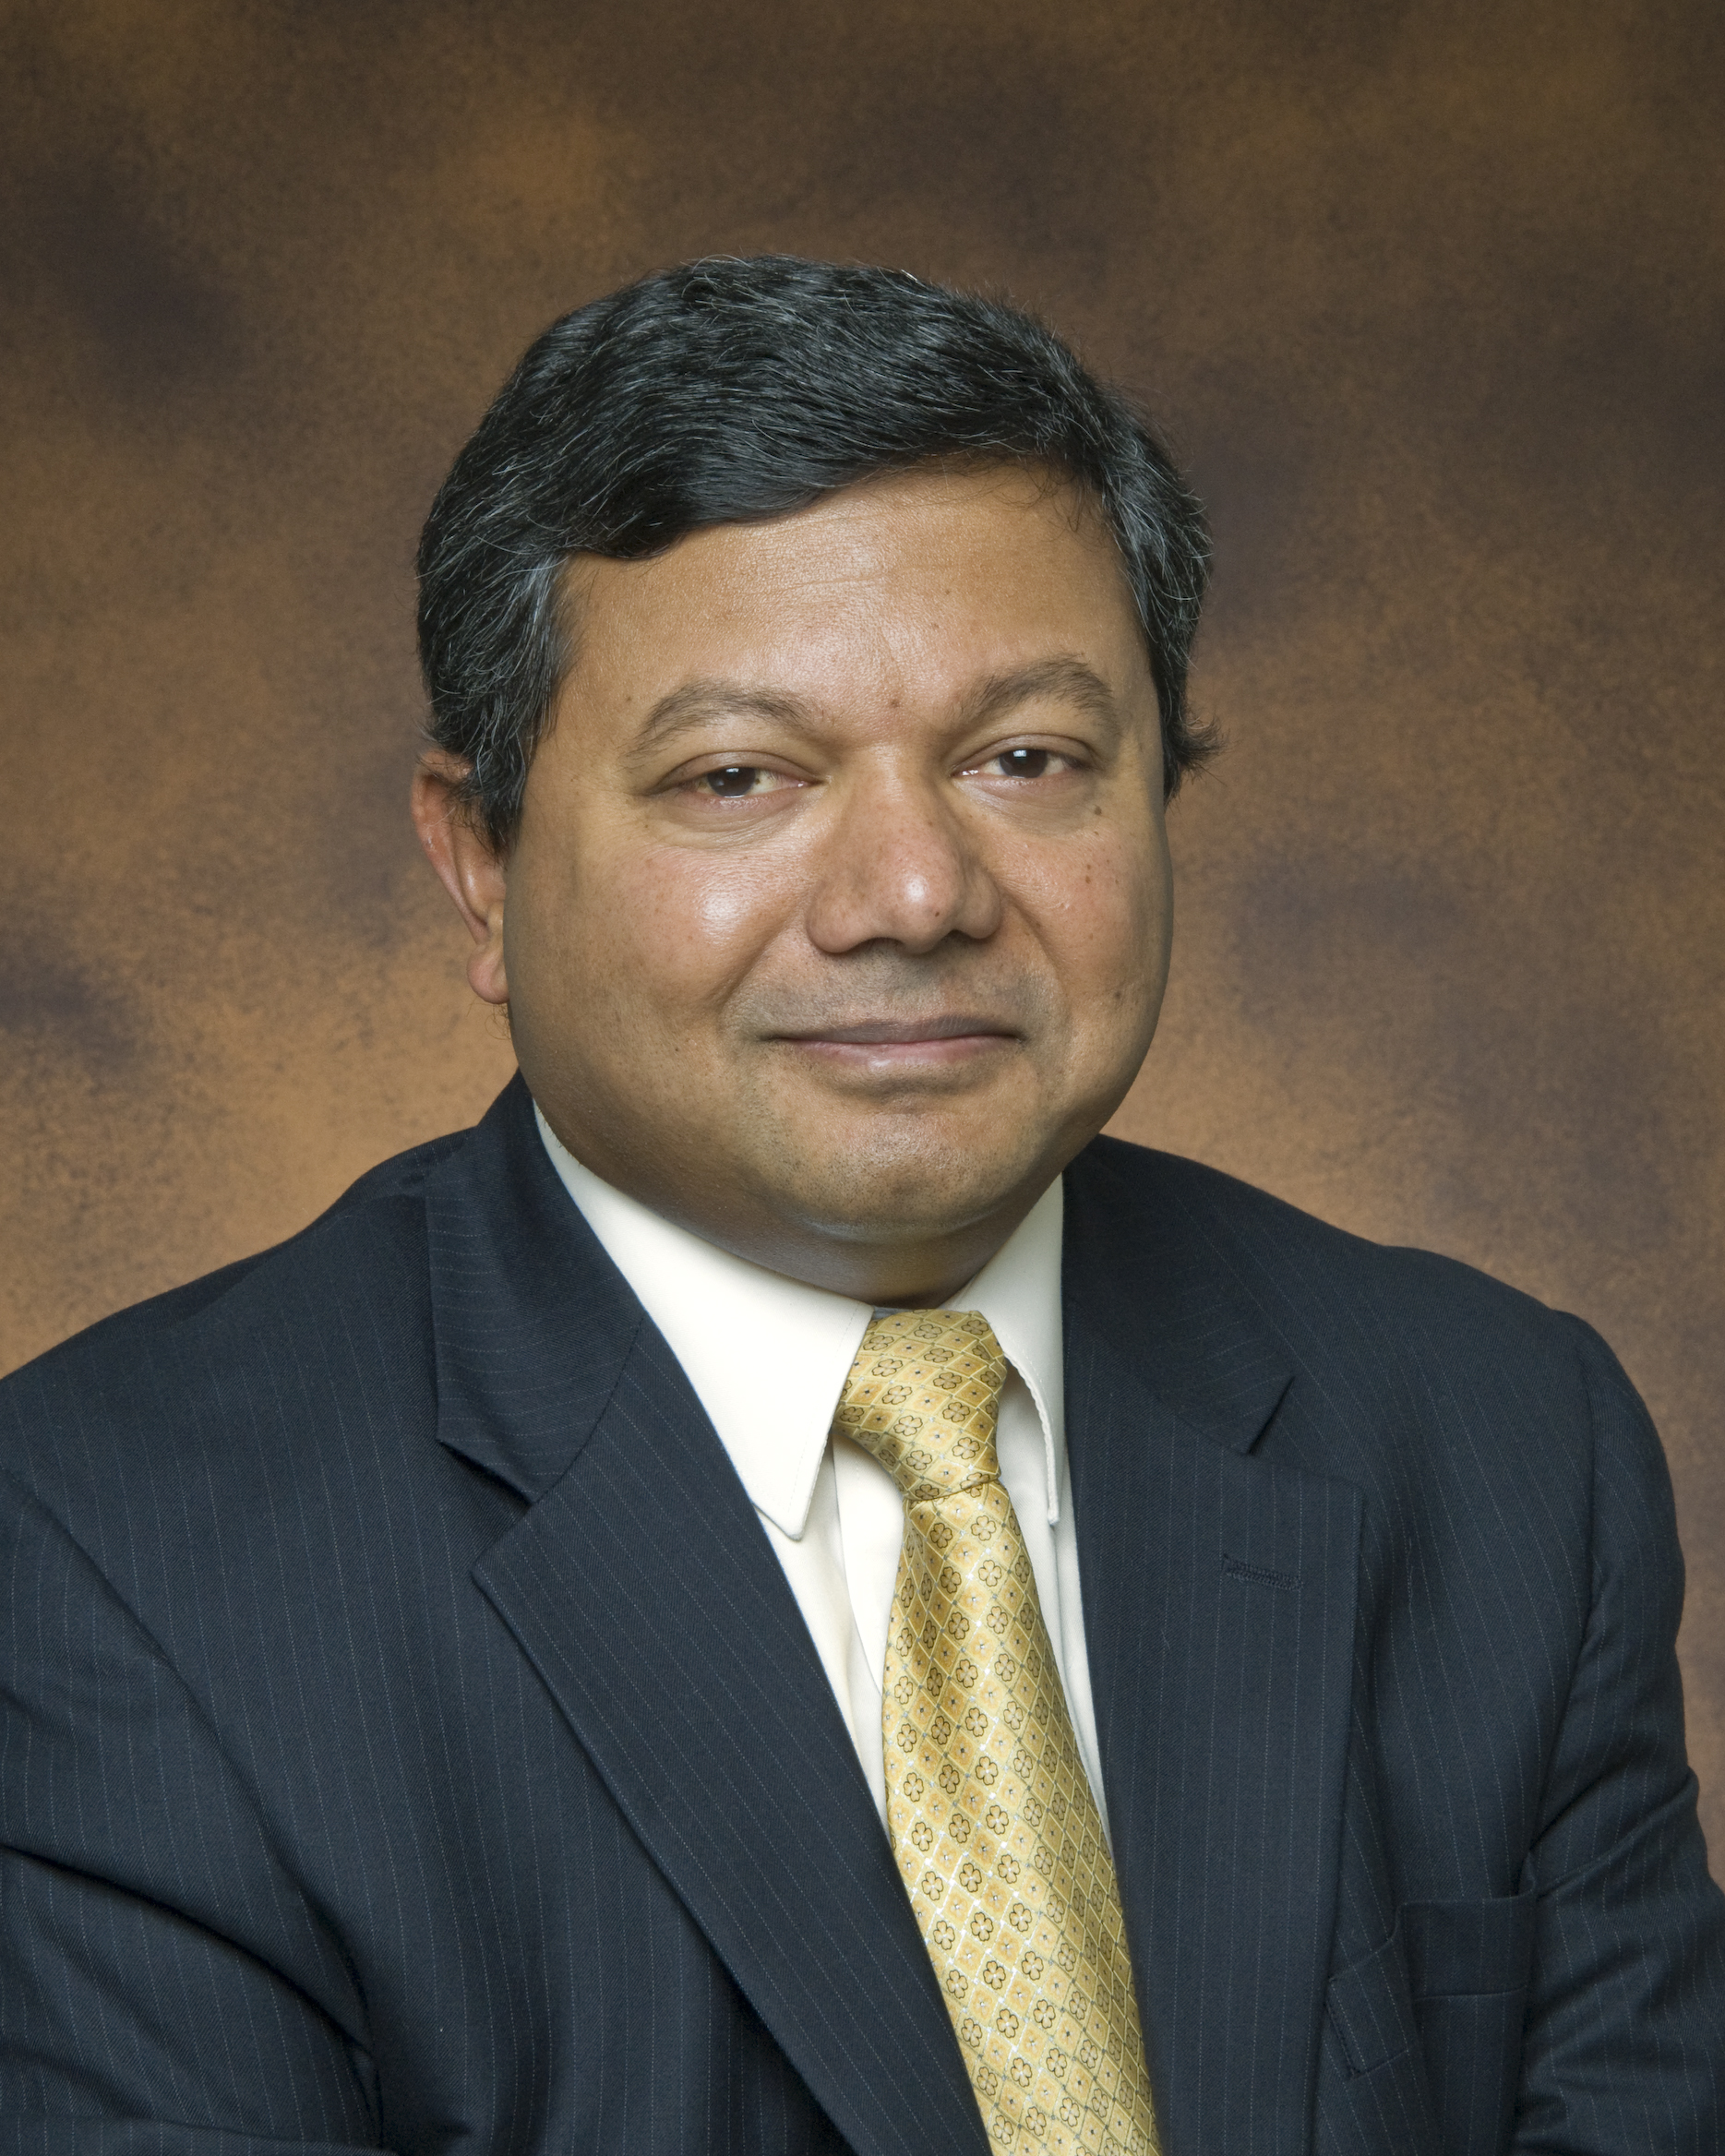 Dr. Arun Majumdar - Majumdar